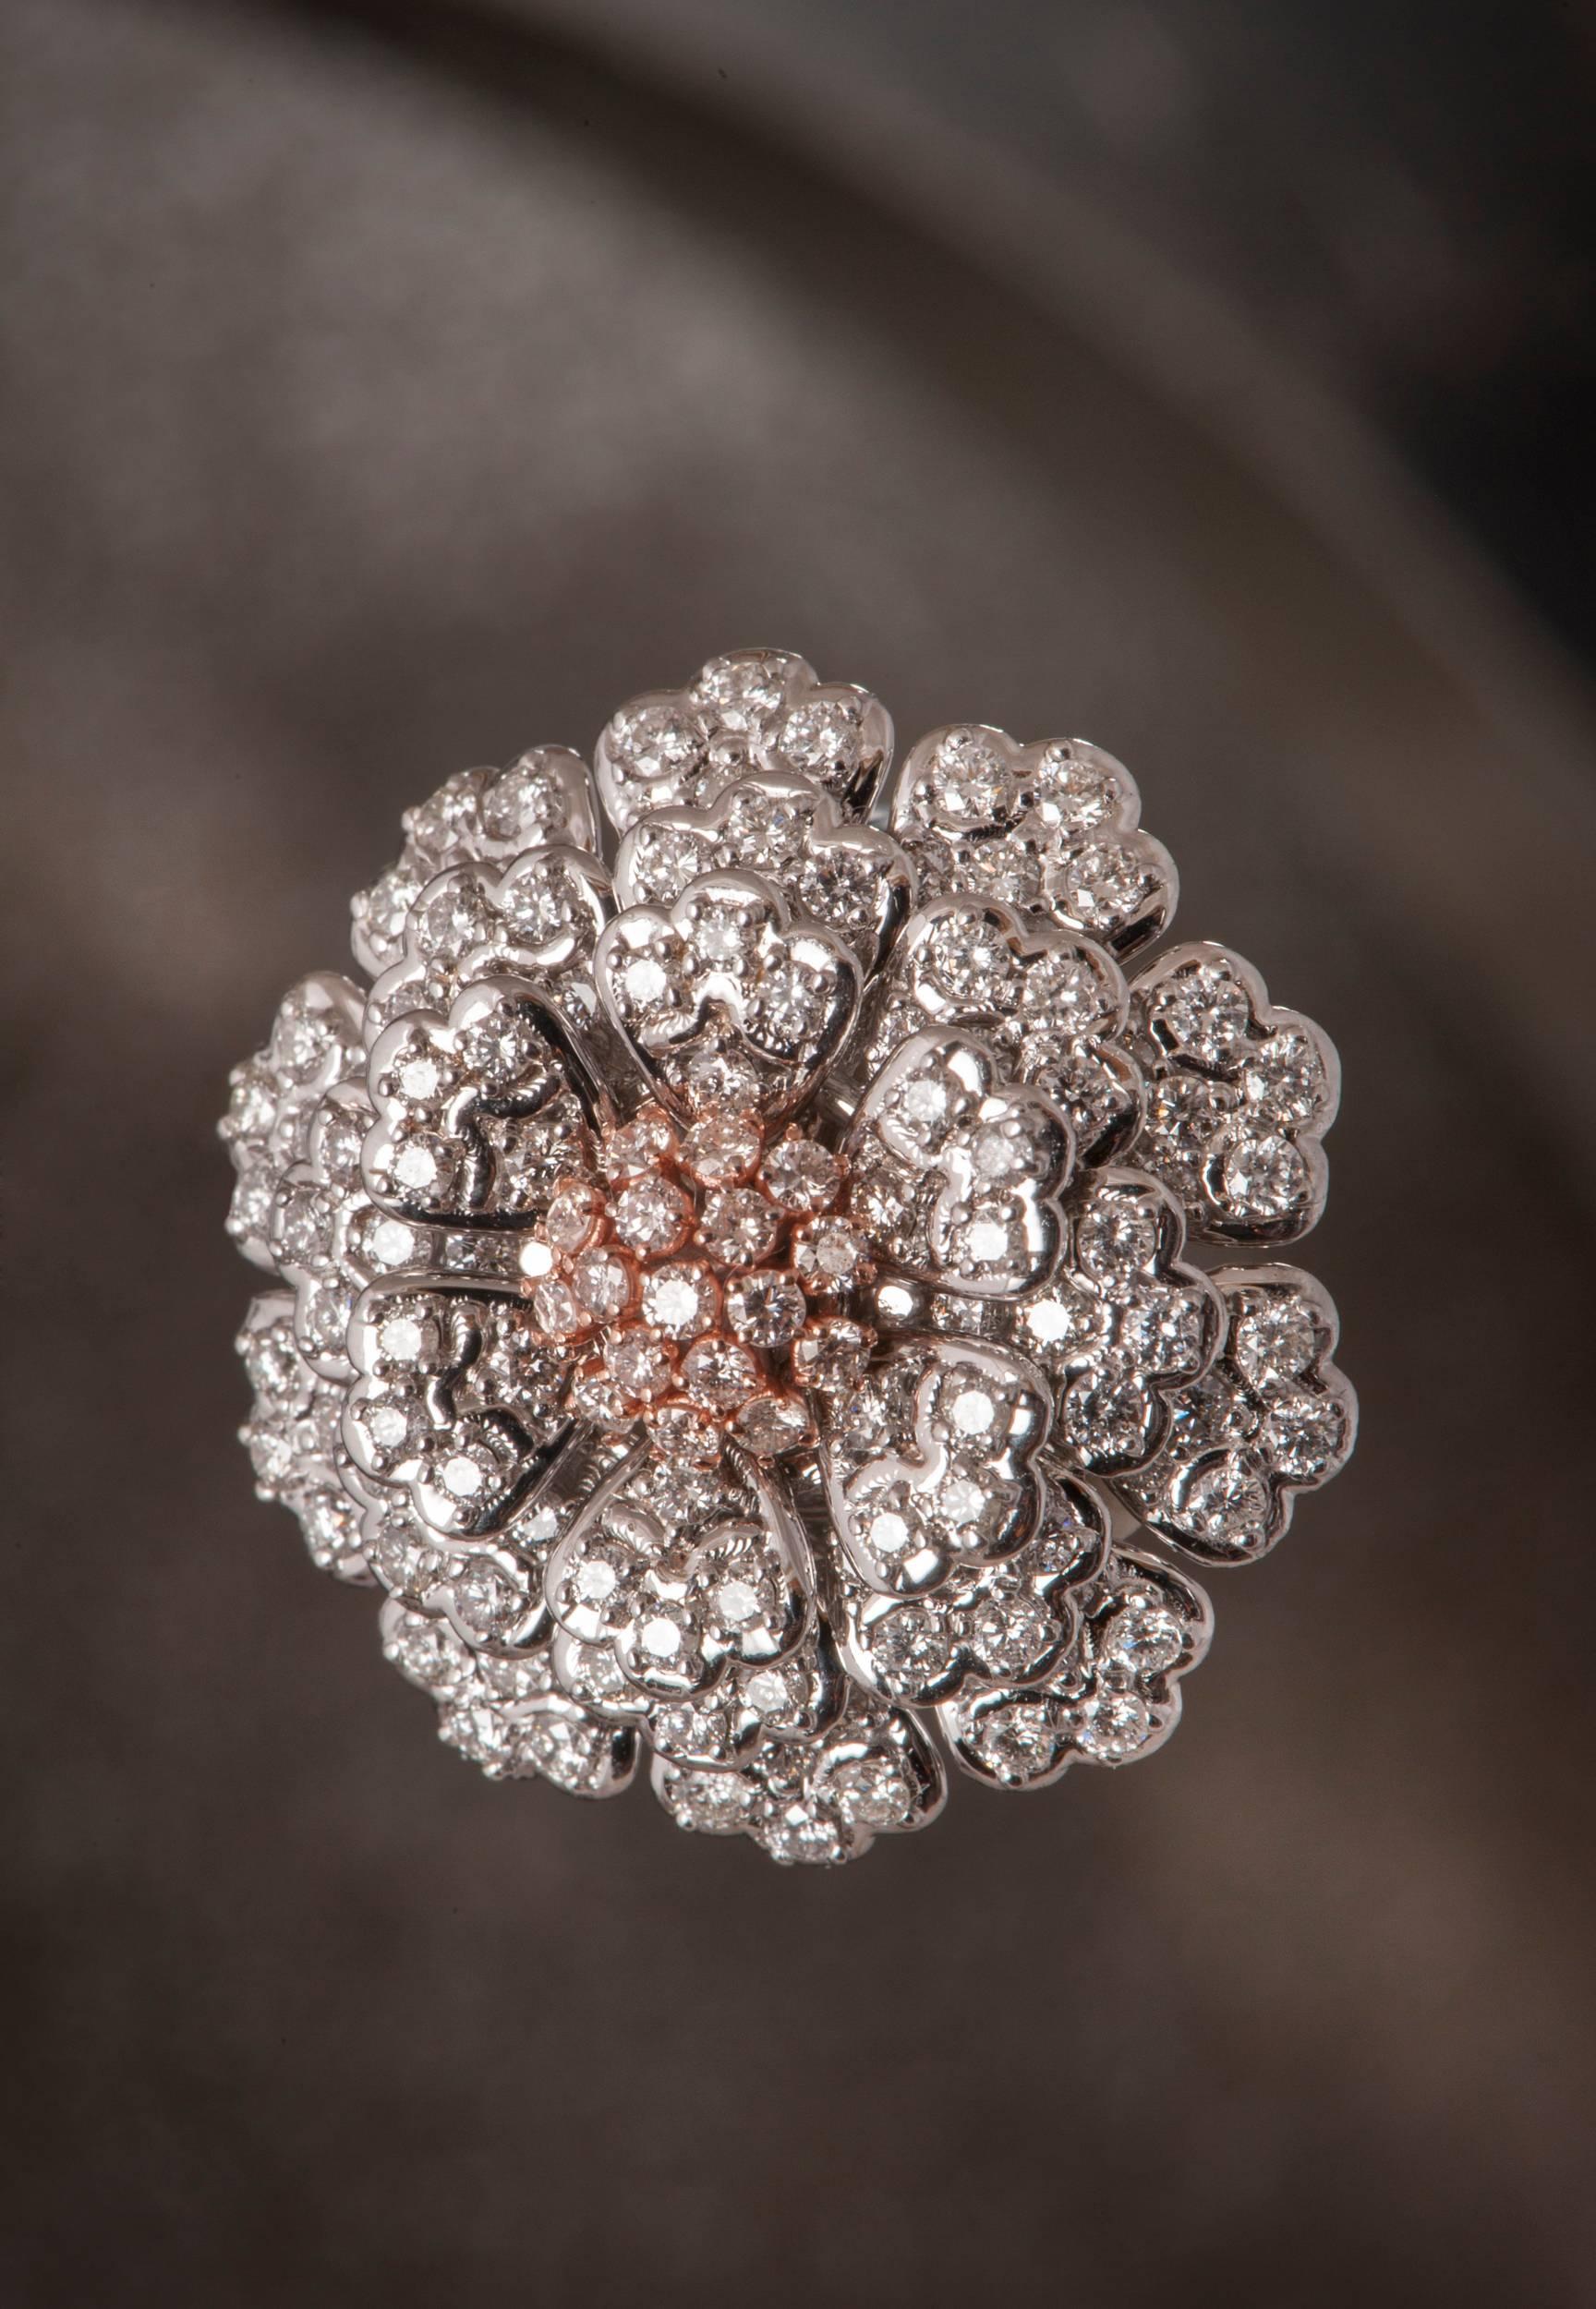 Cette romantique bague à grappe de diamants à fleurs est fabriquée à la main en or blanc et rouge 18 carats massif.  Certifié EGL. 
Cette bague intemporelle unique en son genre est sertie de 167 diamants ronds de taille brillant de haute couleur